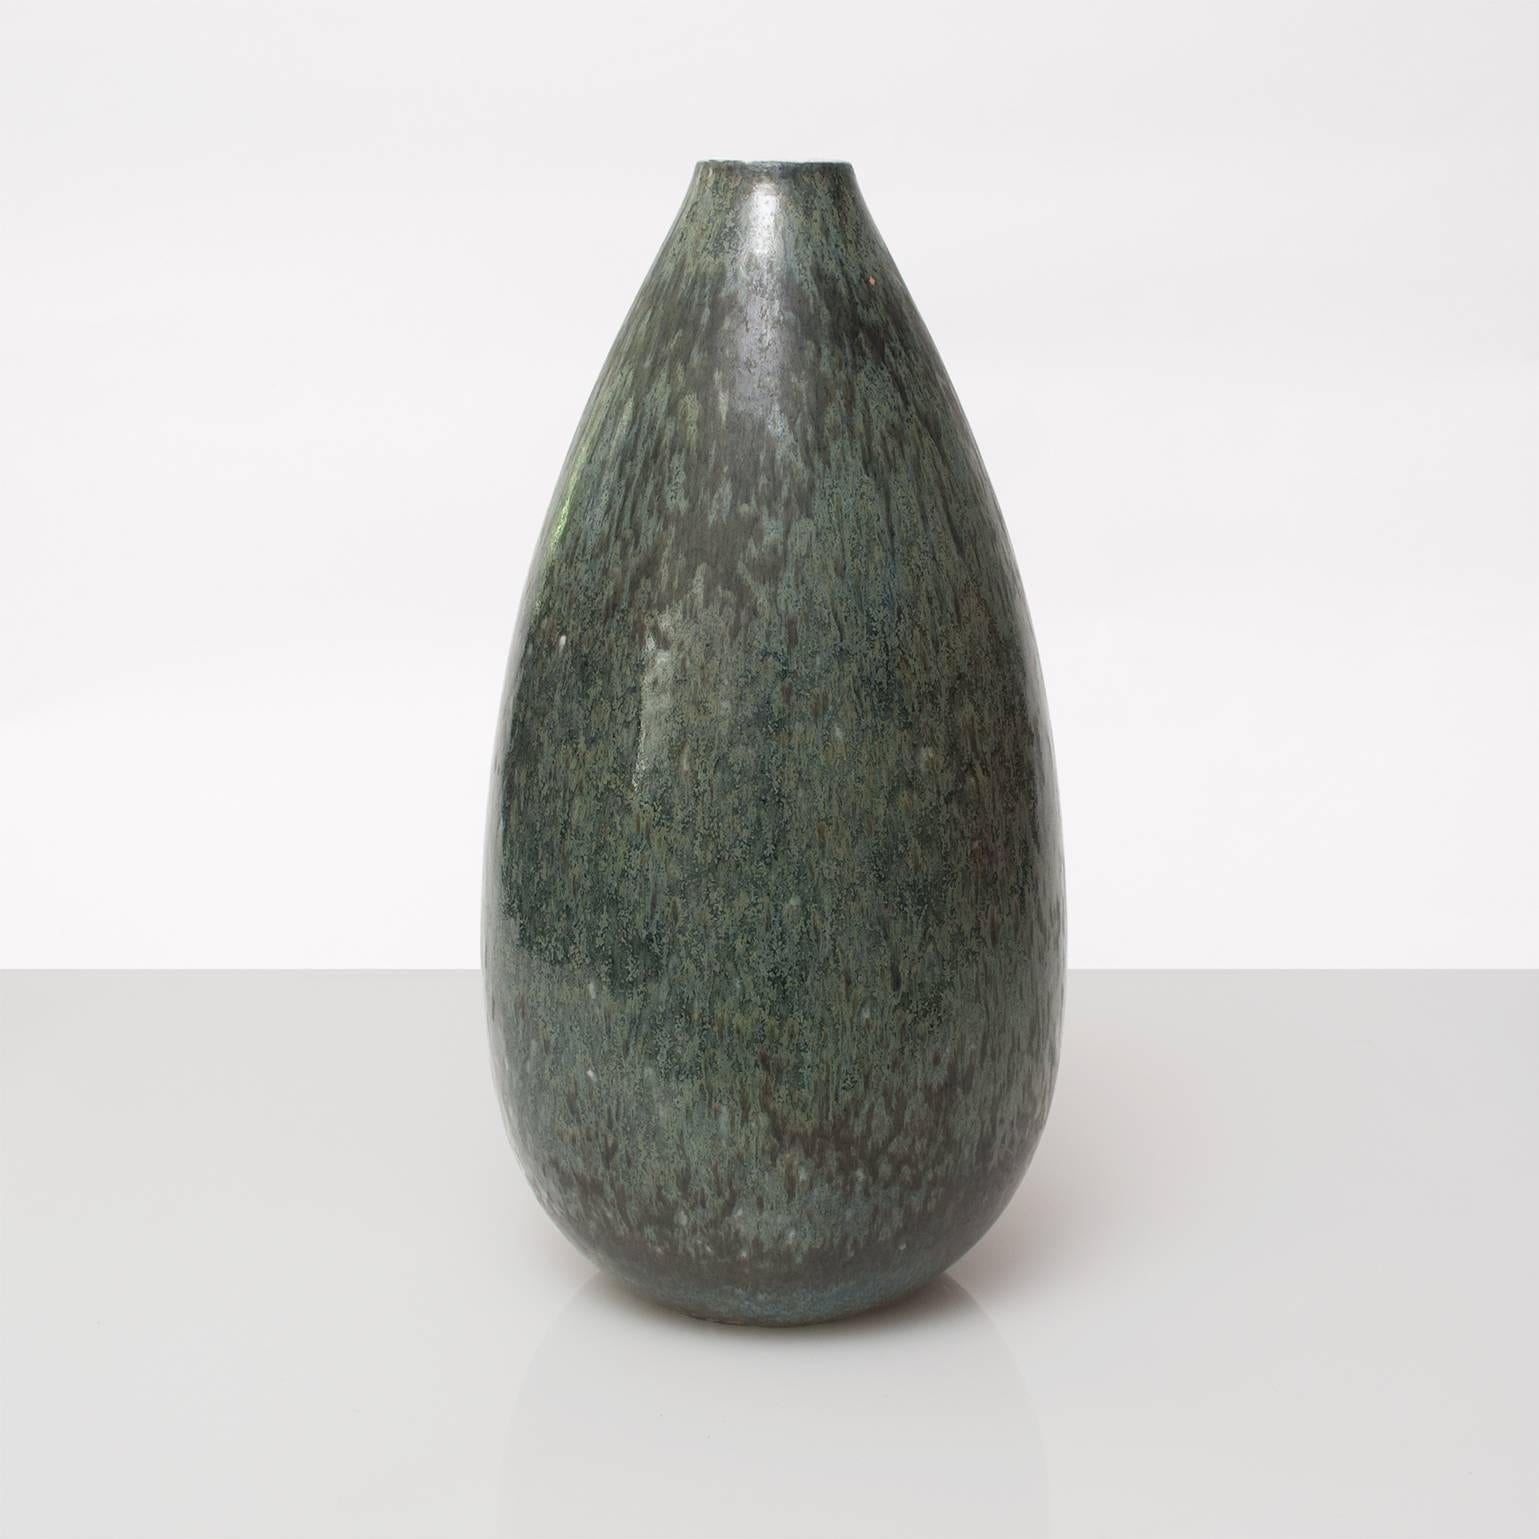 Large Scandinavian Modern studio vase in a richly mottled  green glaze. Designed by Gunnar Nylund for Rorstrand, signed on bottom. 
Height: 15.5
Diameter: 7.5